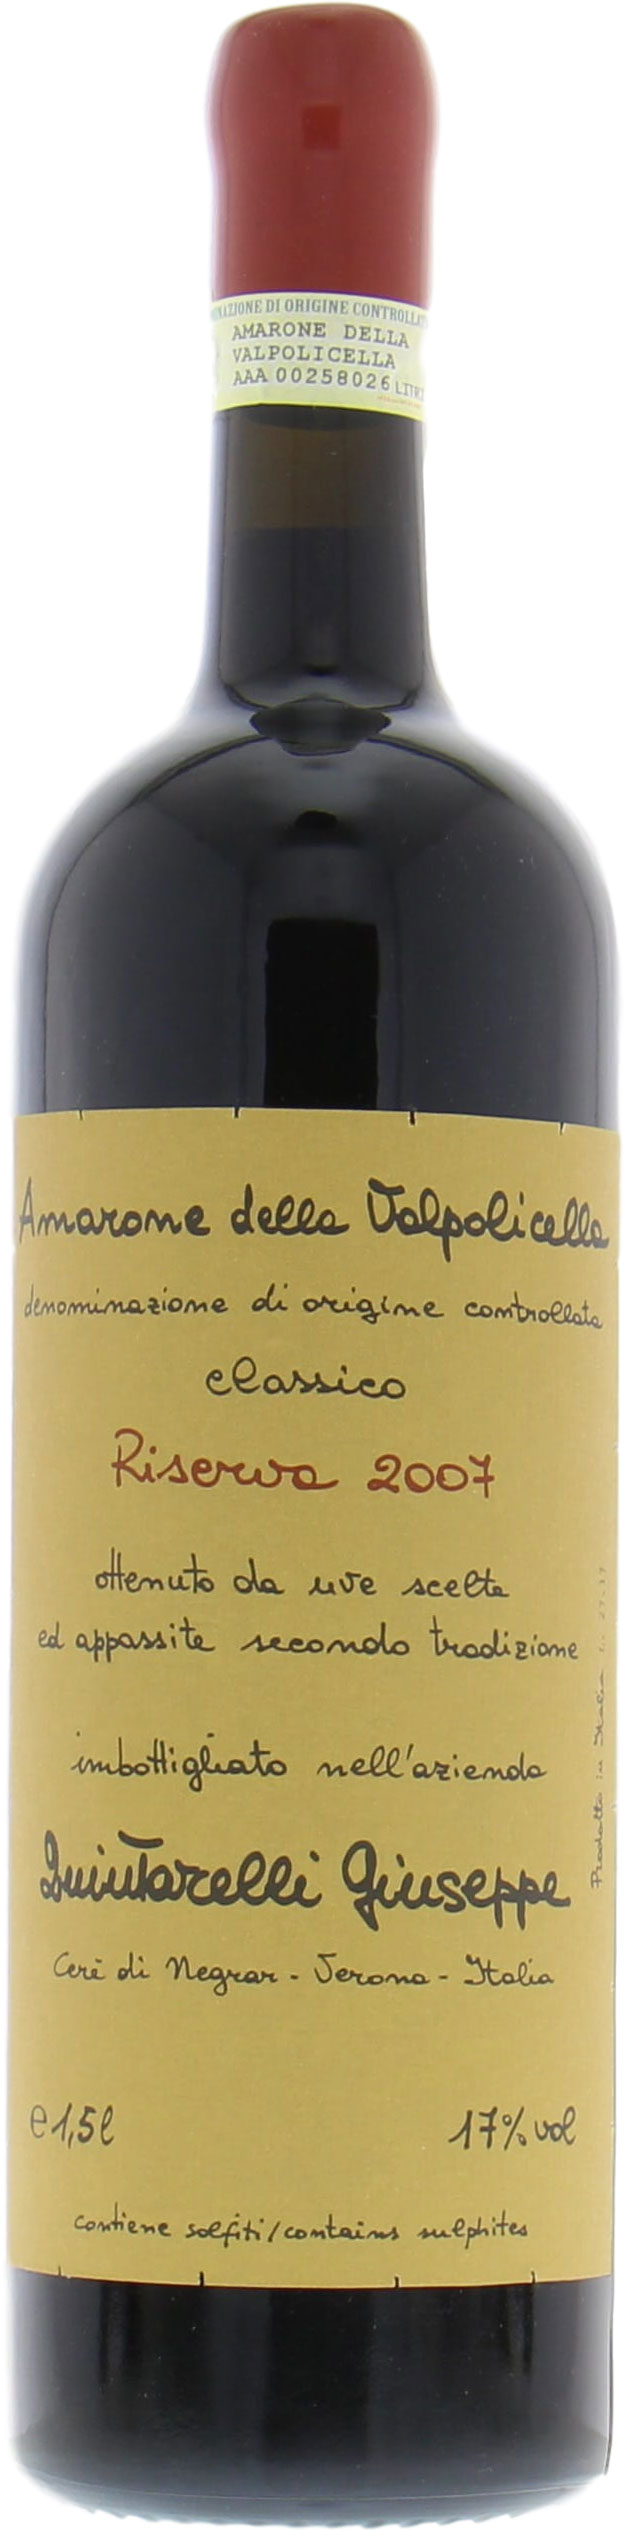 Quintarelli  - Amarone della Valpolicella Riserva 2007 Perfect